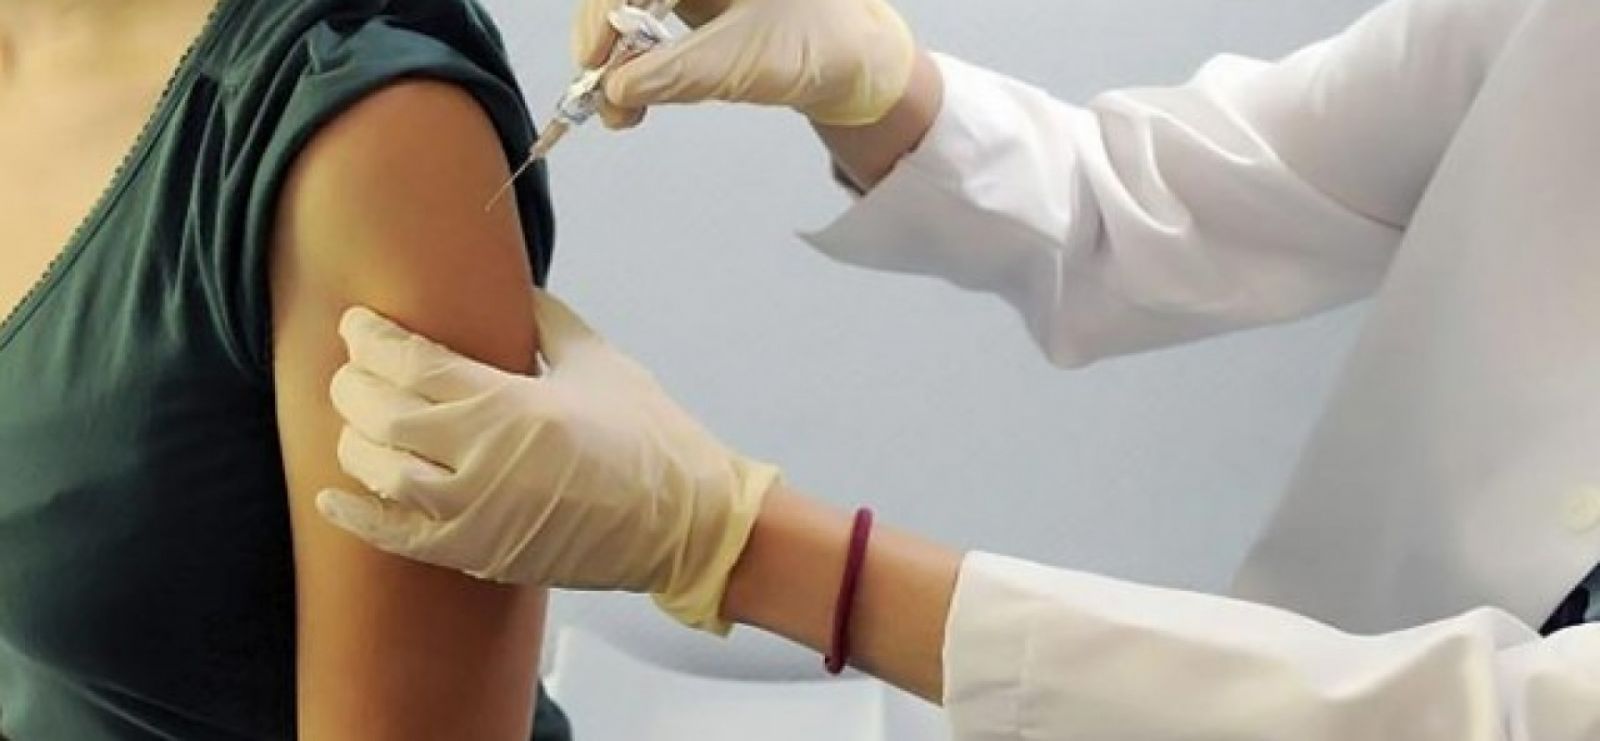 Πρέπει να εμβολιάζονται όσοι έχουν αυτοάνοσα;